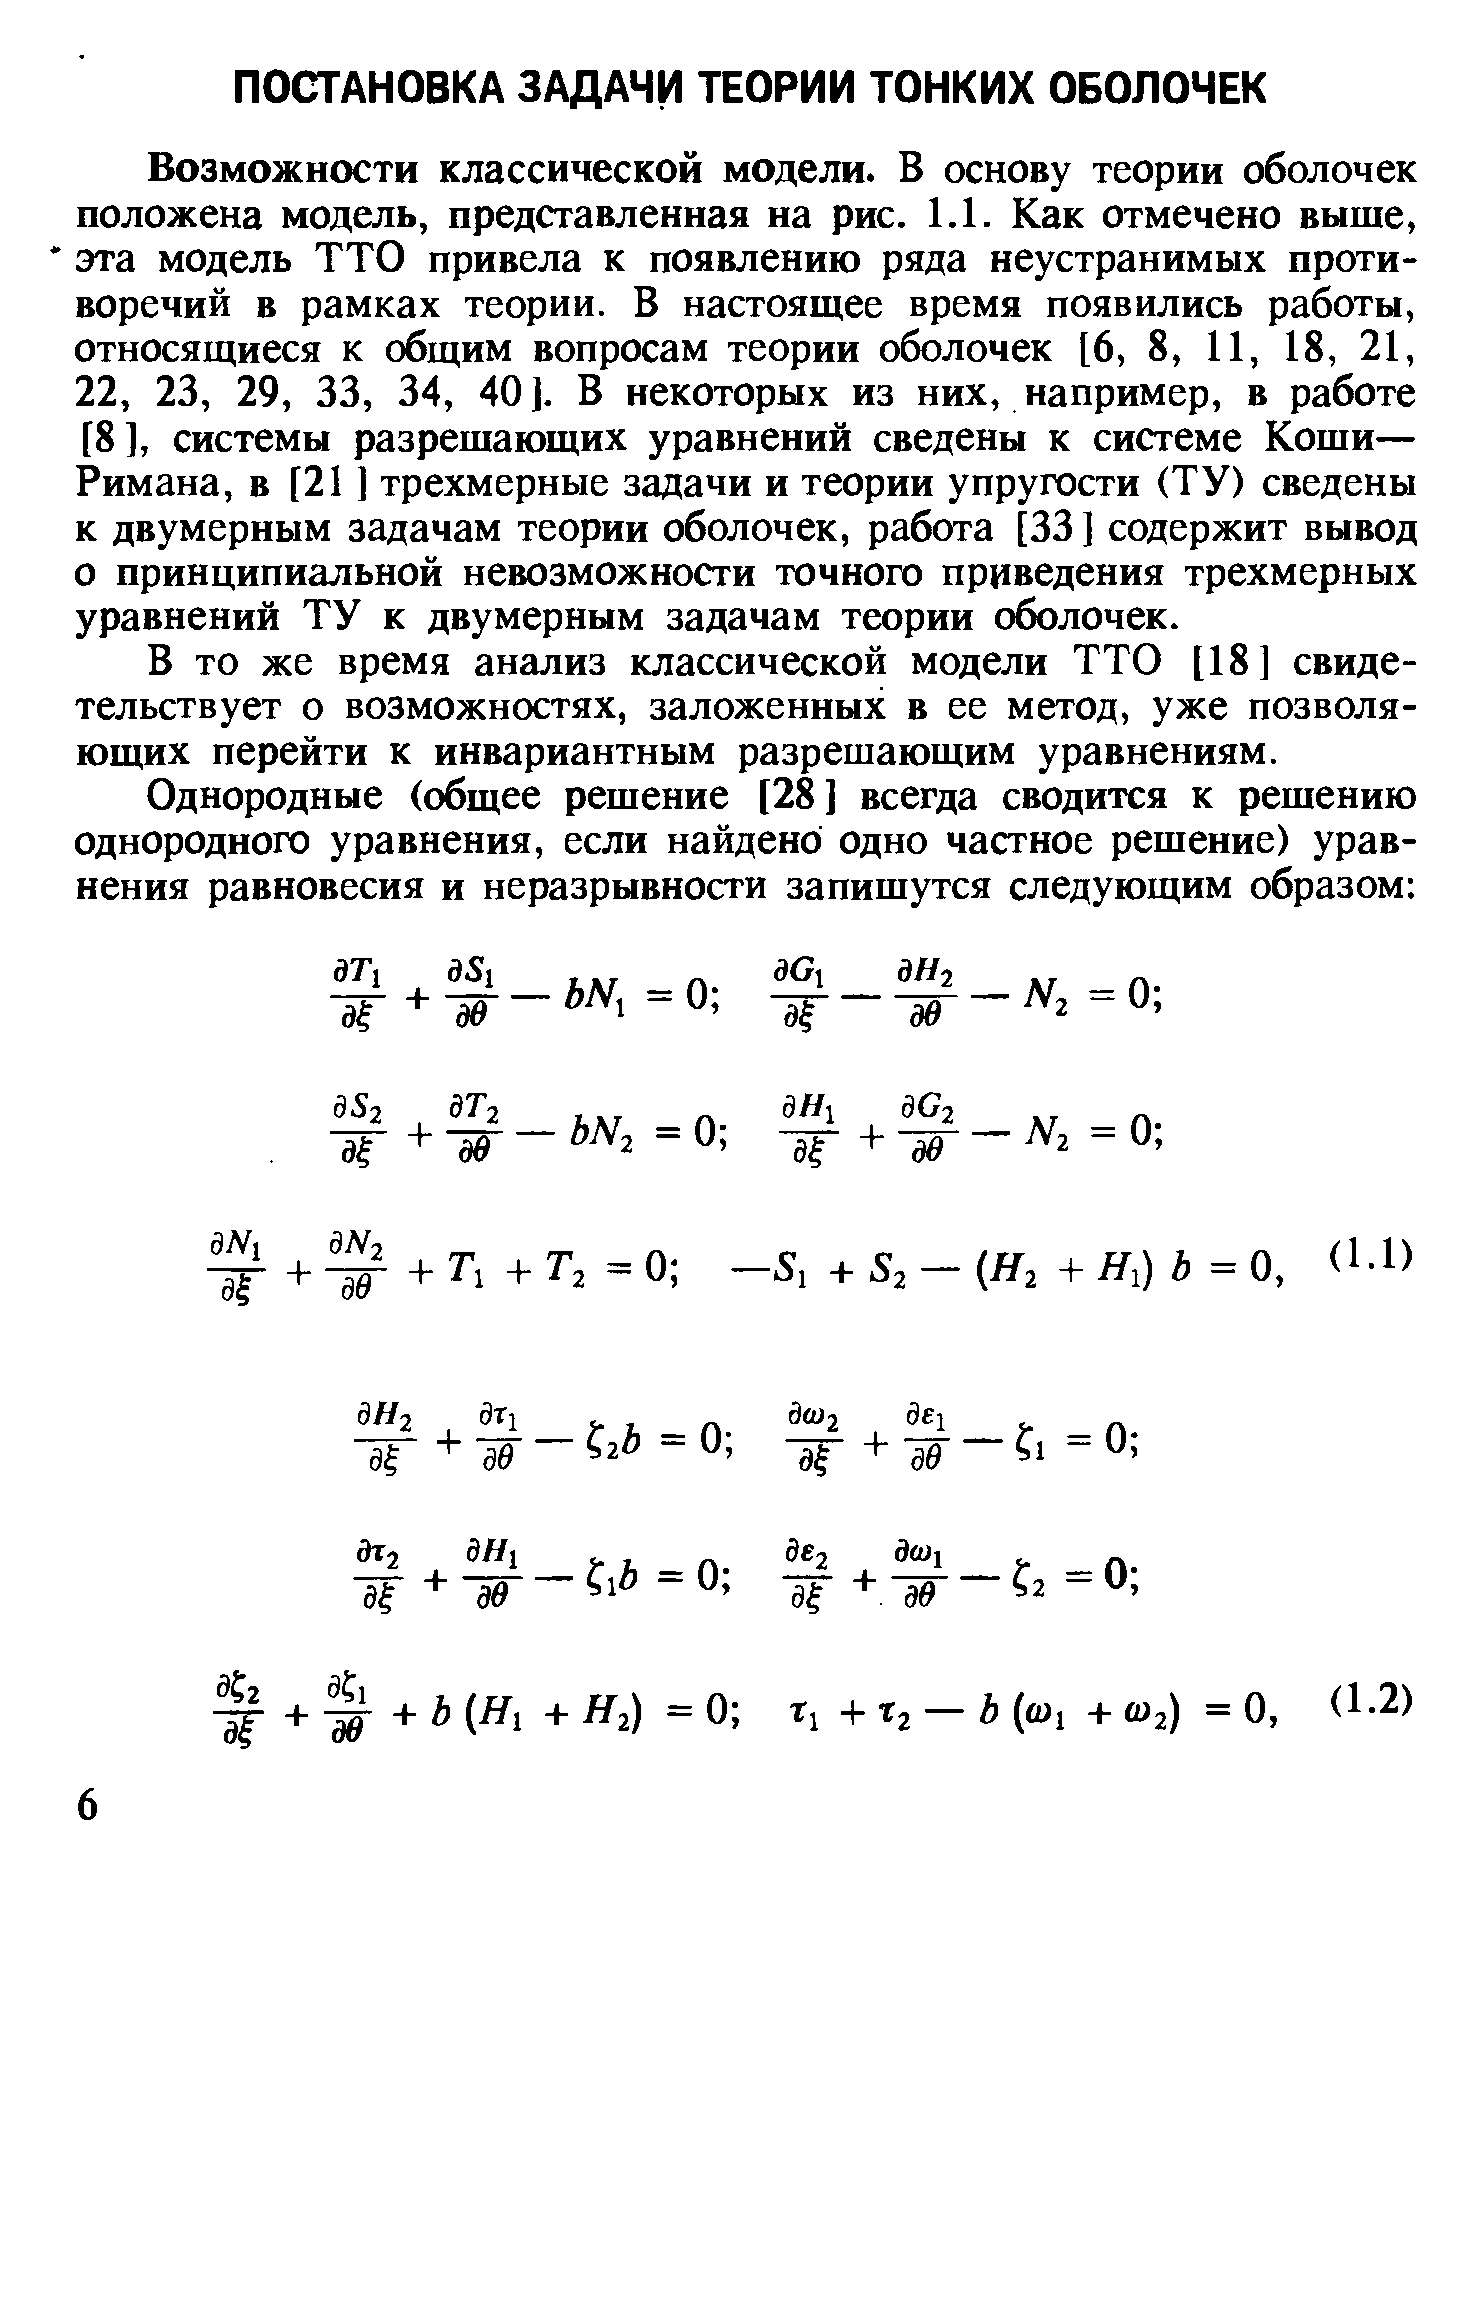 В то же время анализ классической модели ТТО [18] свидетельствует о возможностях, заложенных в ее метод, уже позволяющих перейти к инвариантным разрешающим уравнениям.
